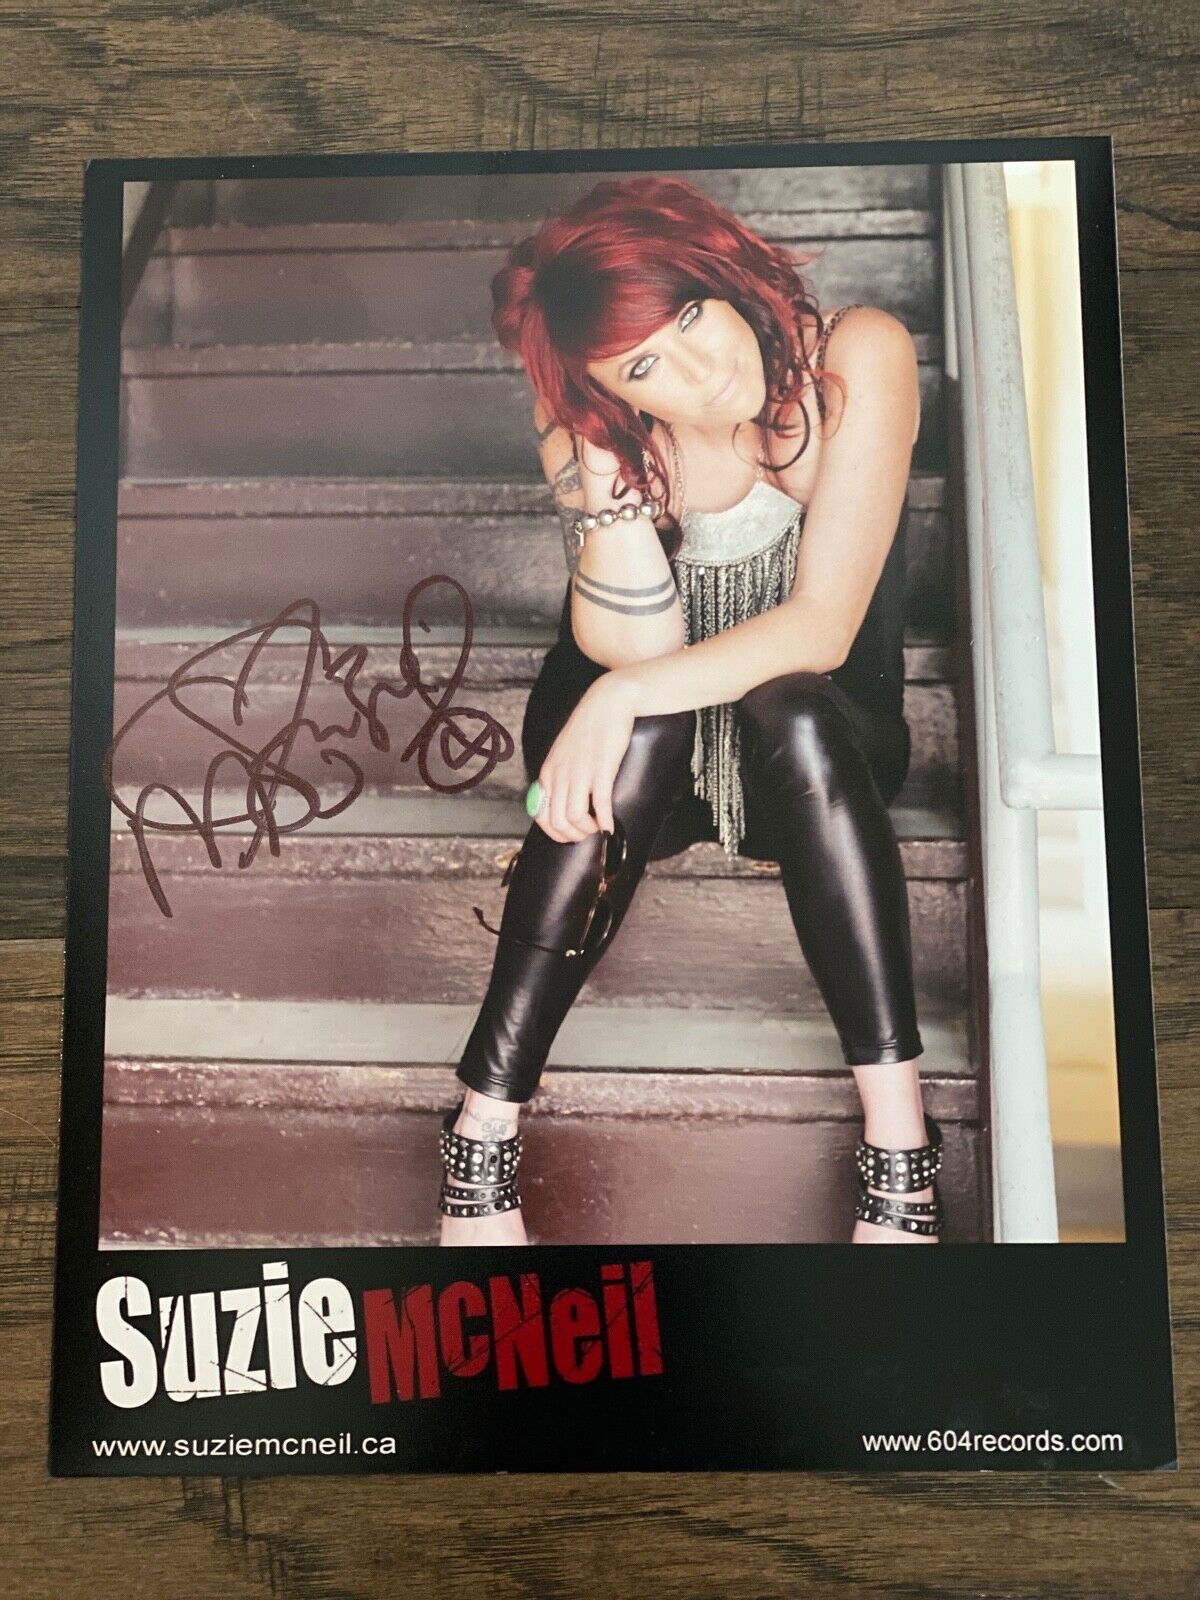 SUZIE MCNEIL Original Signed Autographed 604 Records 8x10 Photograph